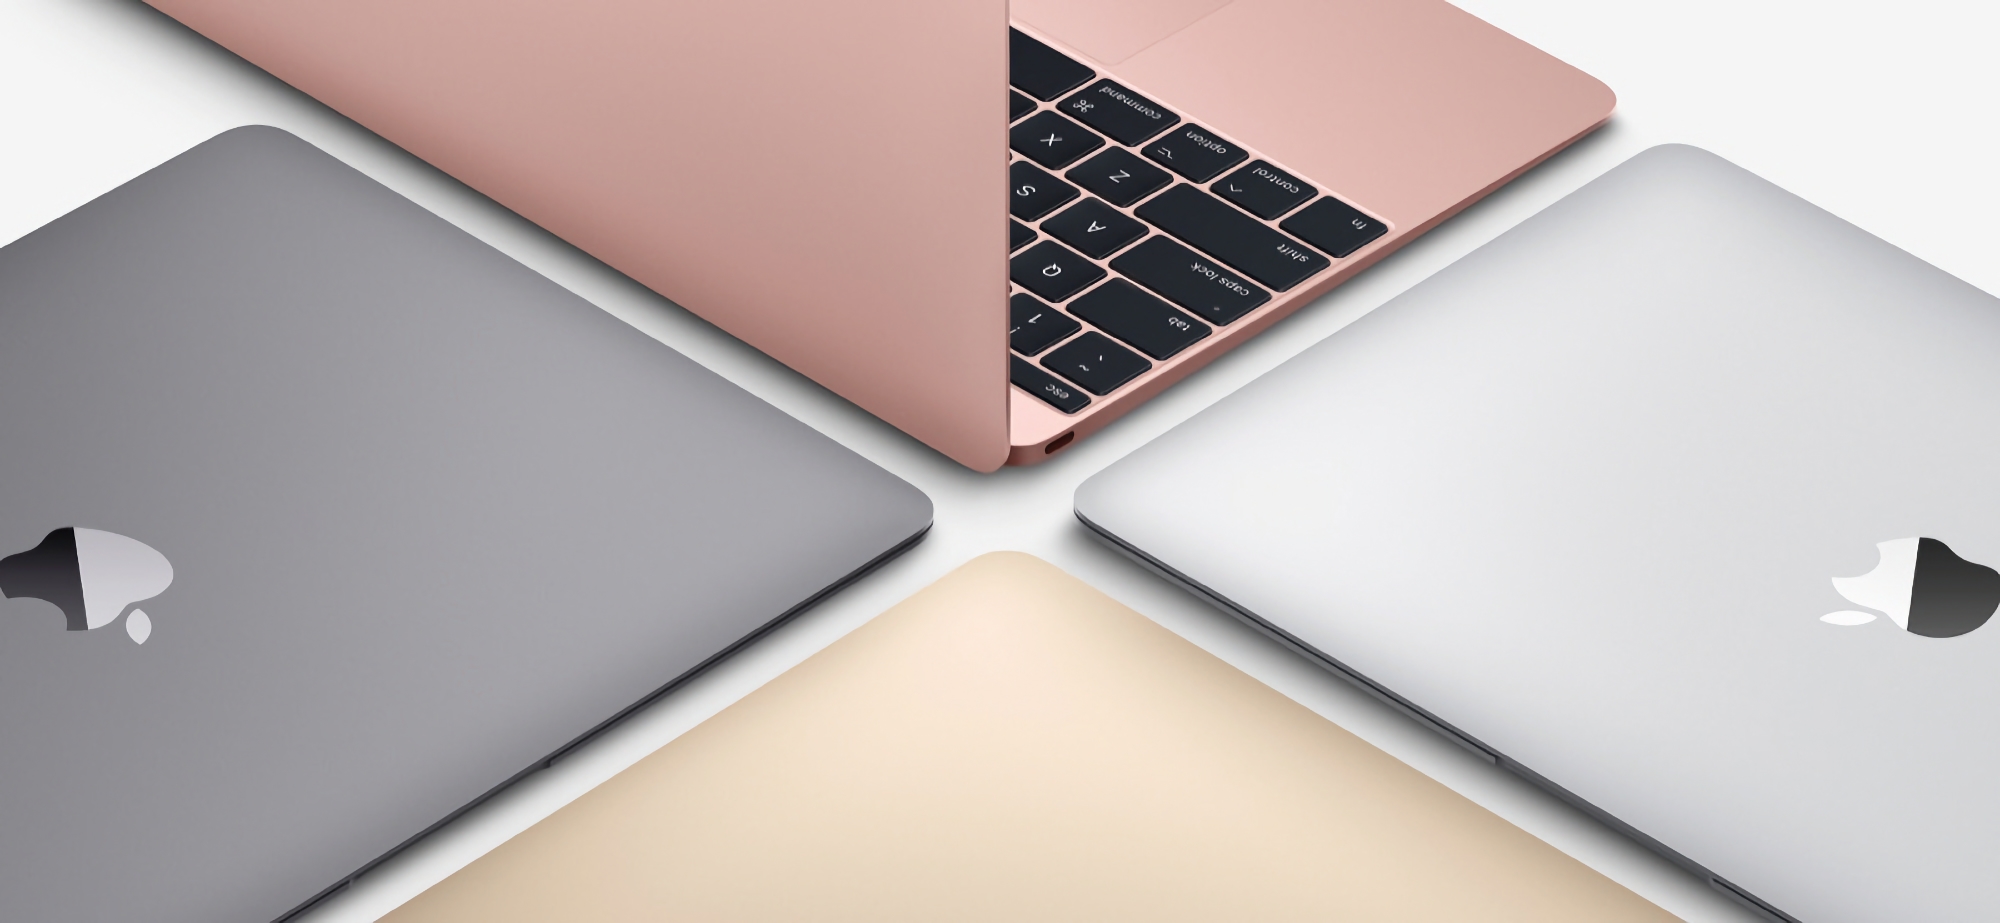 Rykten: Apple arbetar på en budget MacBook, nyheten kommer att komma till marknaden i två versioner och kommer att kosta cirka $ 700